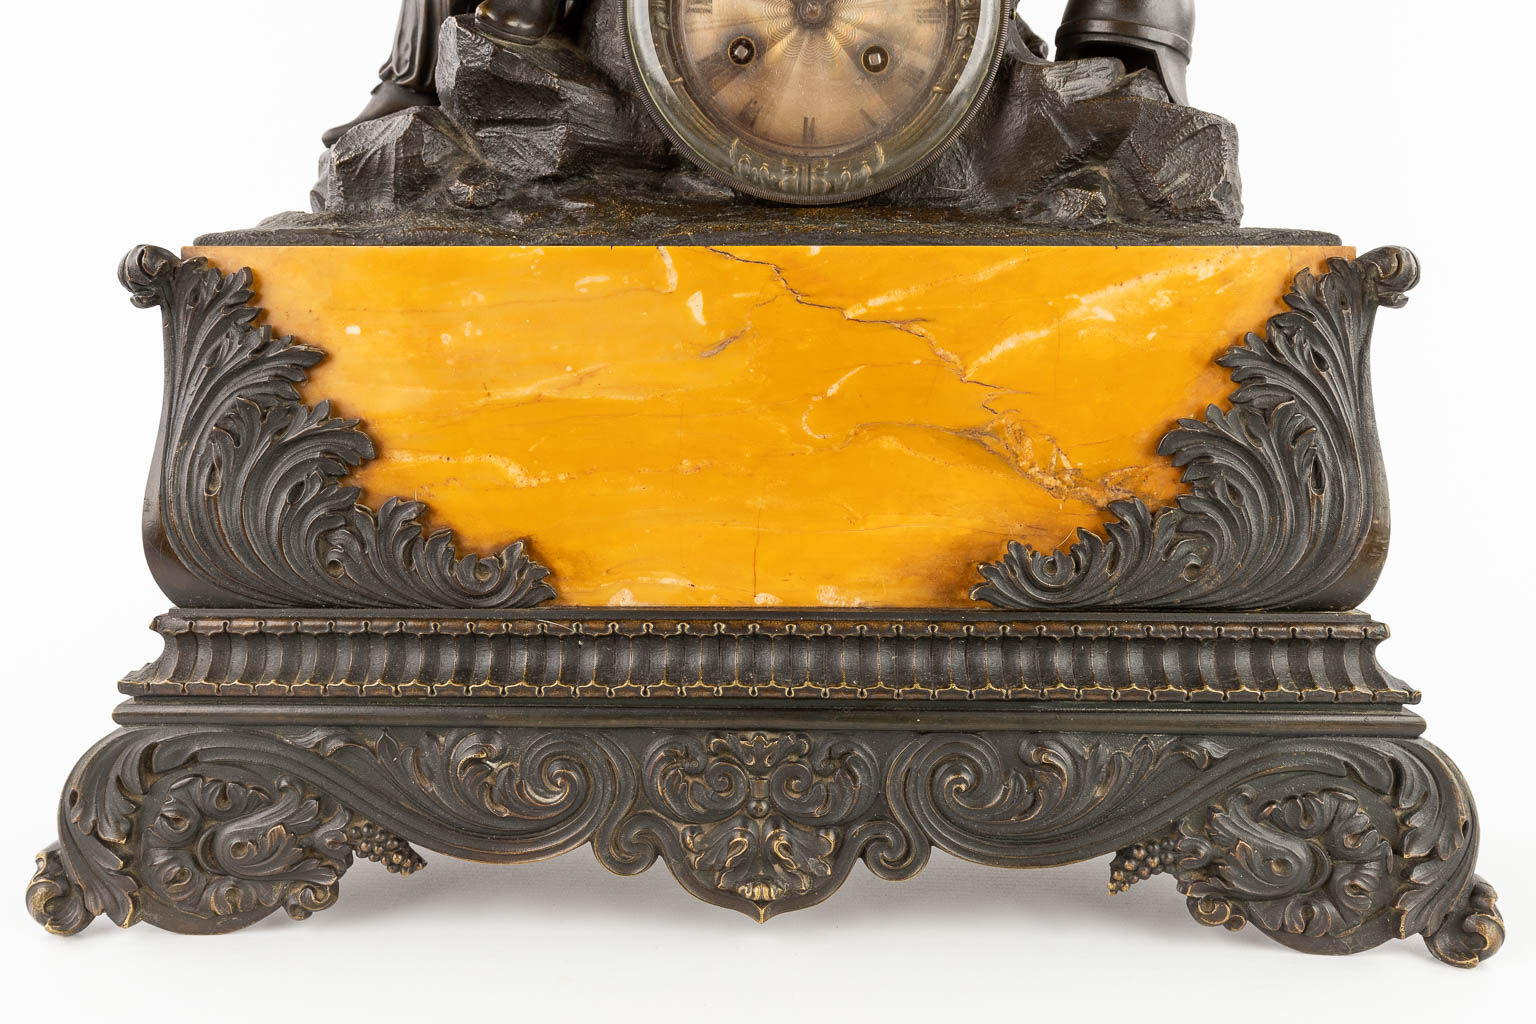 An antique mantle clock 